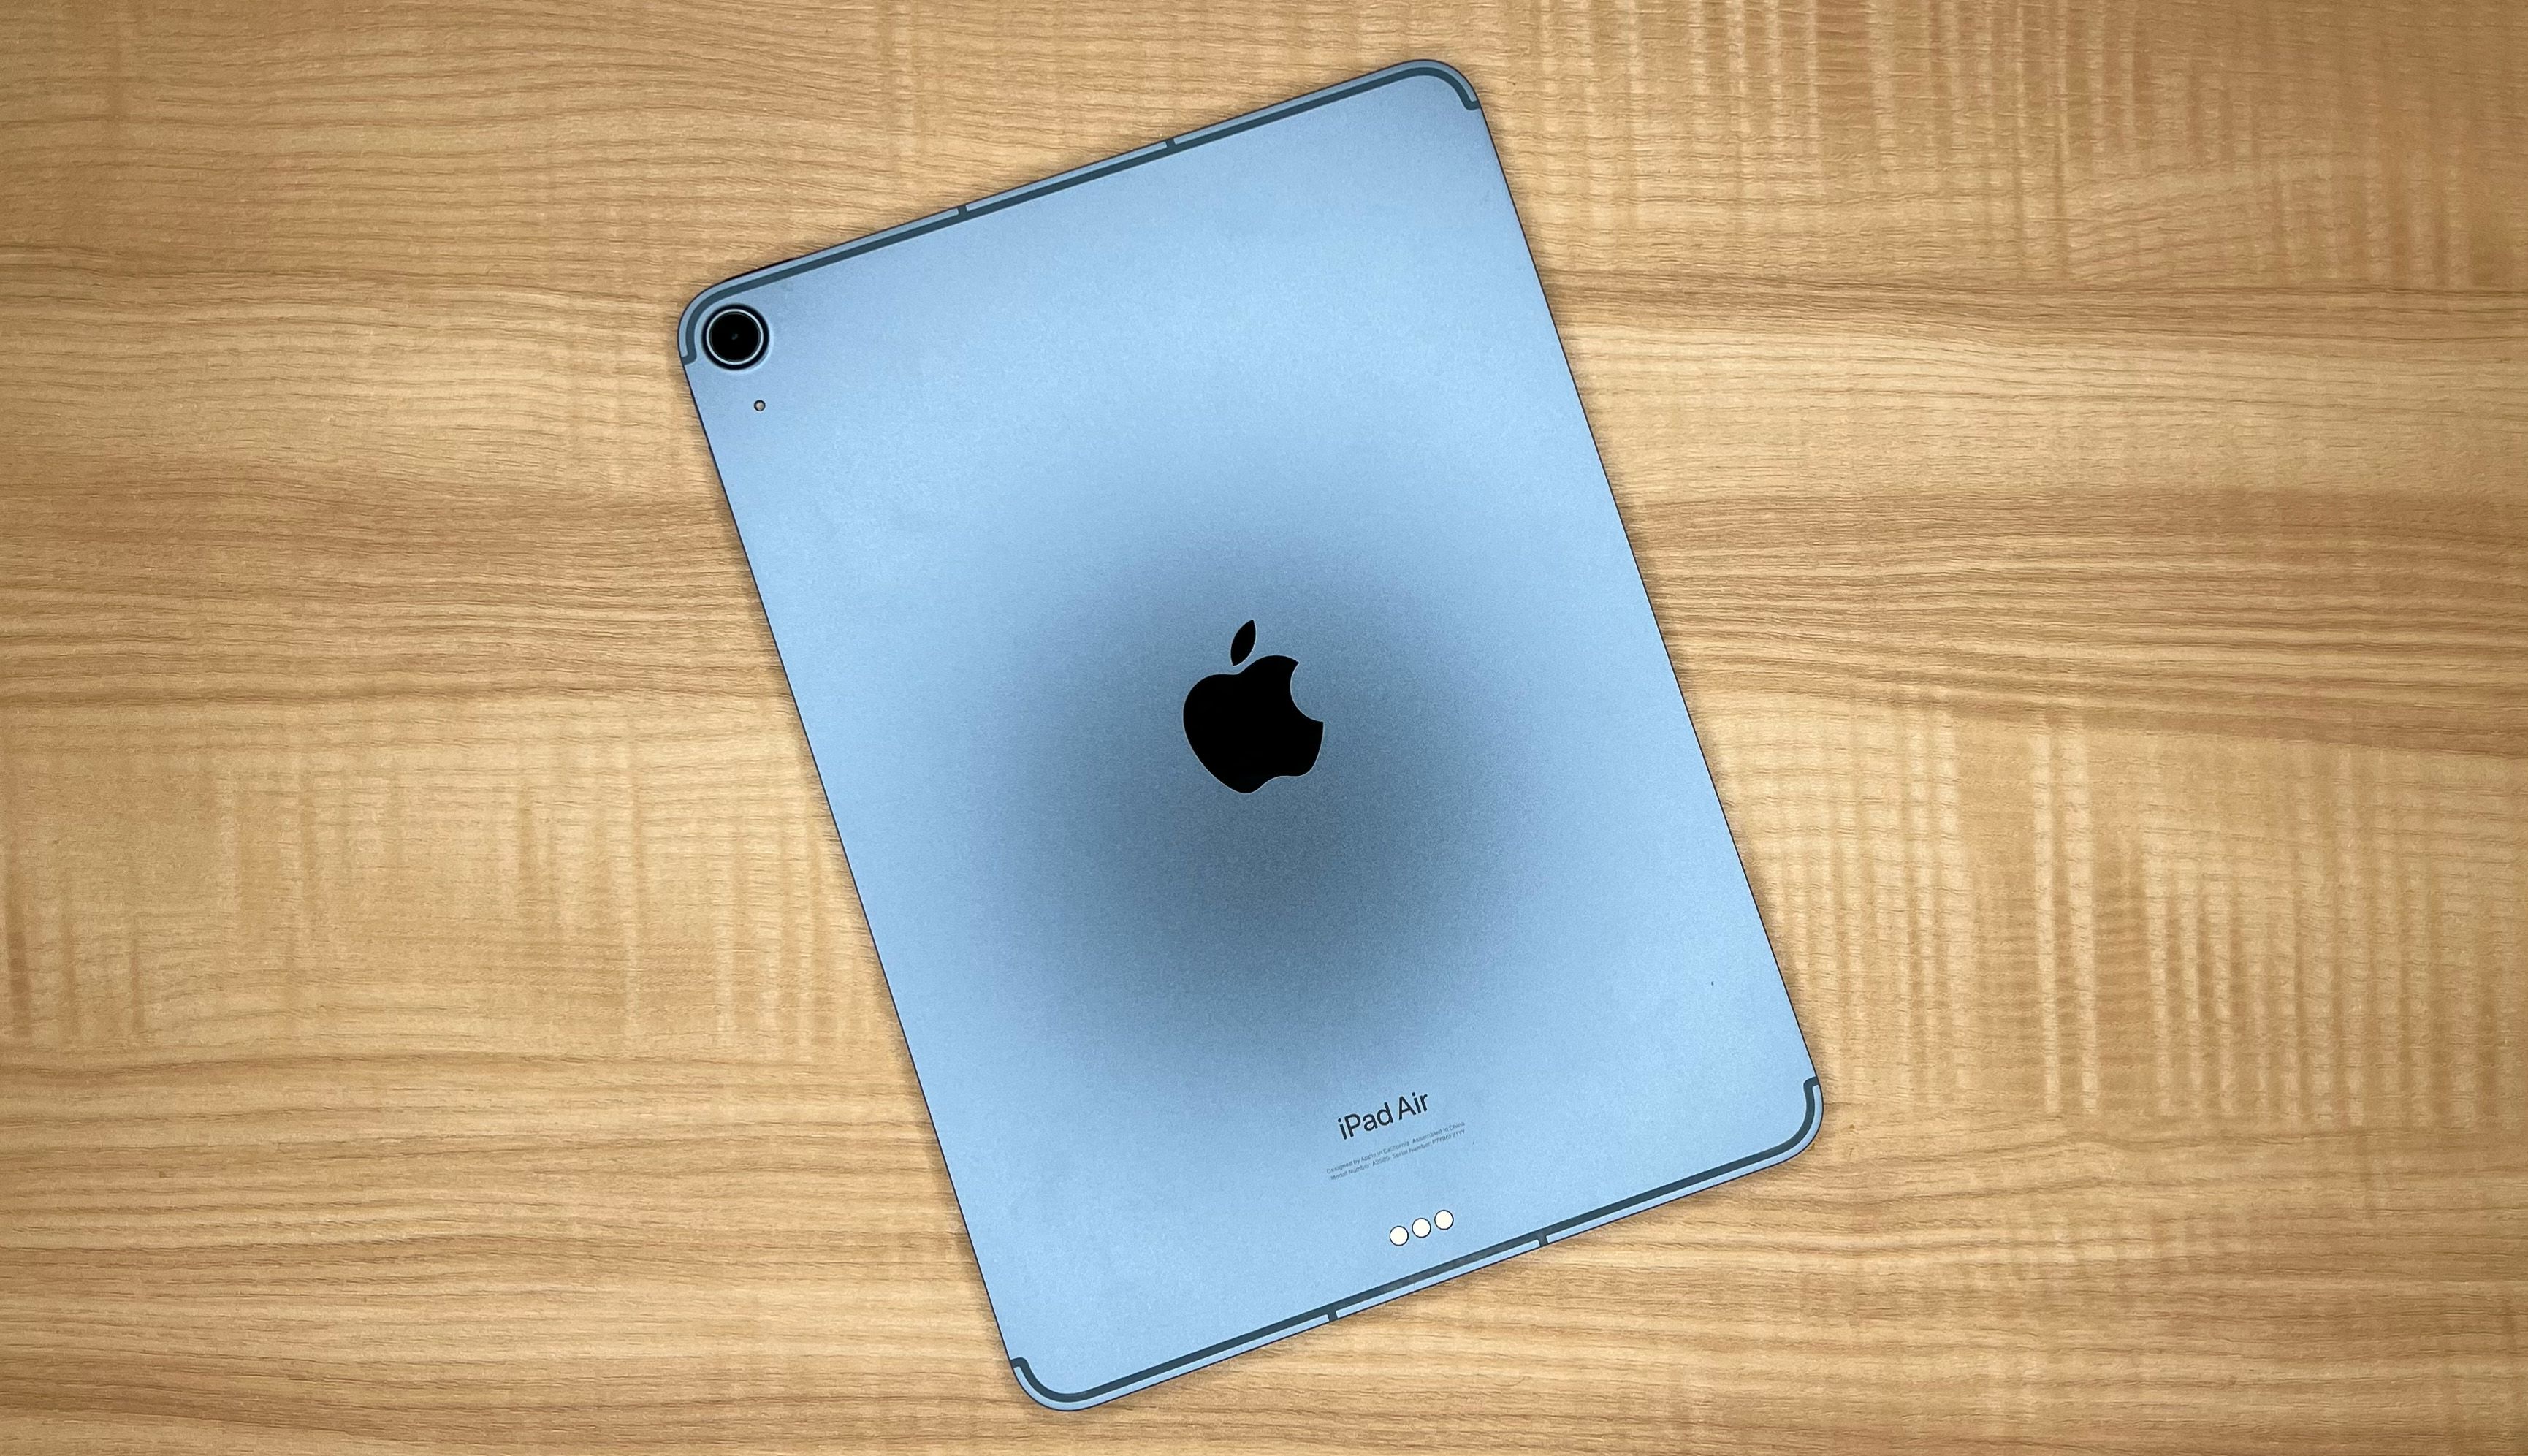 iPad Air (5ª generación)